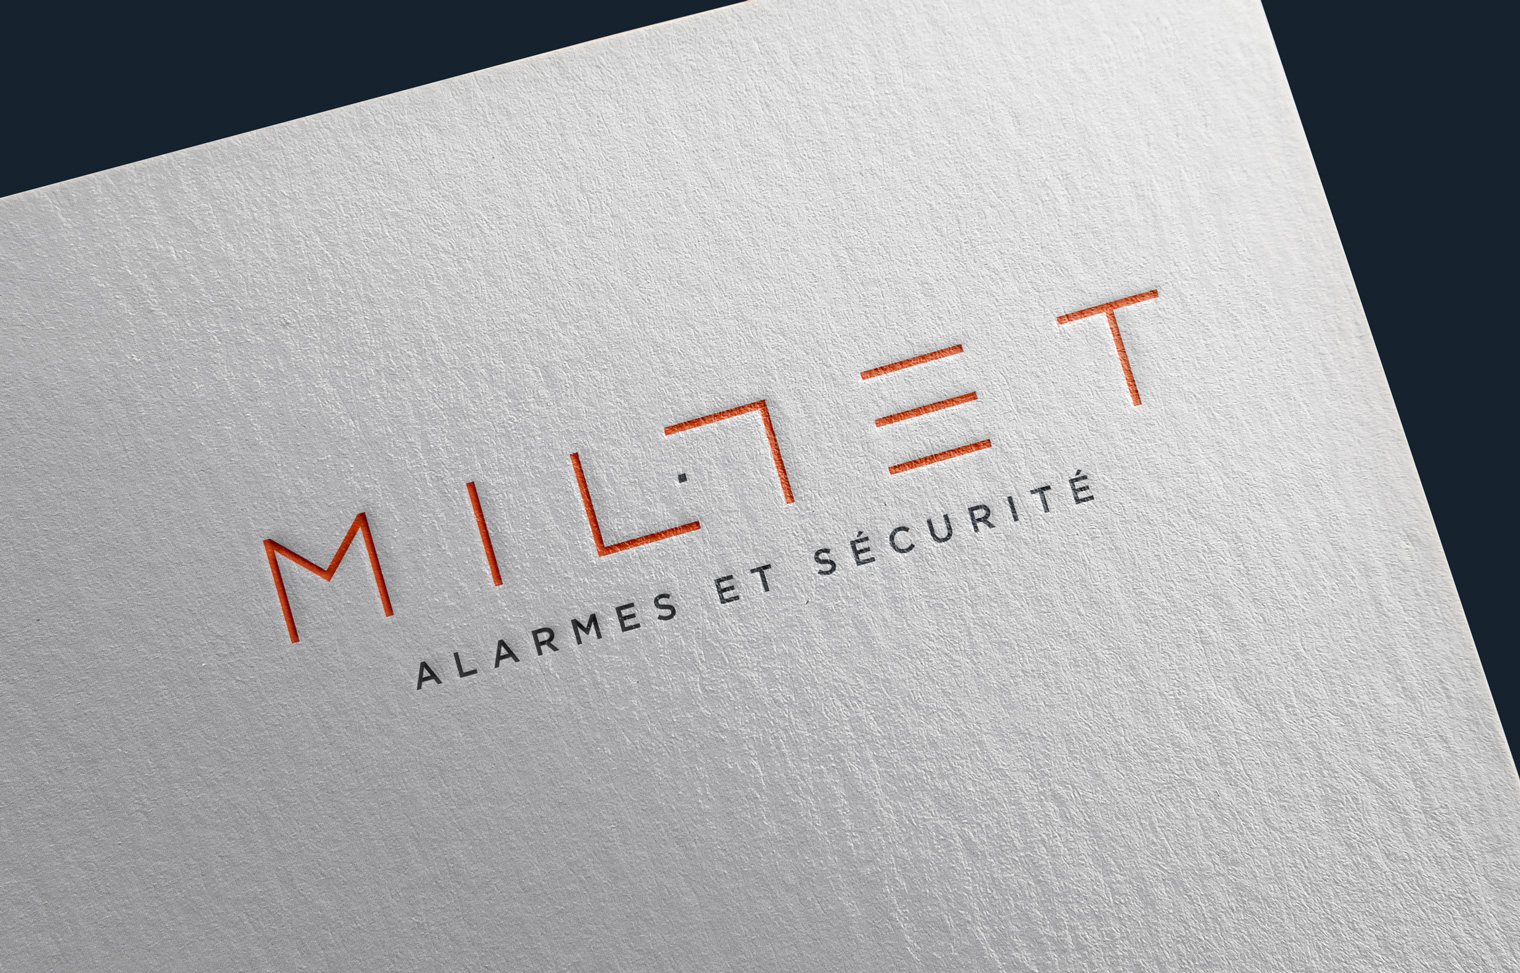 logo millet Millet <br> alarmes et sécurité